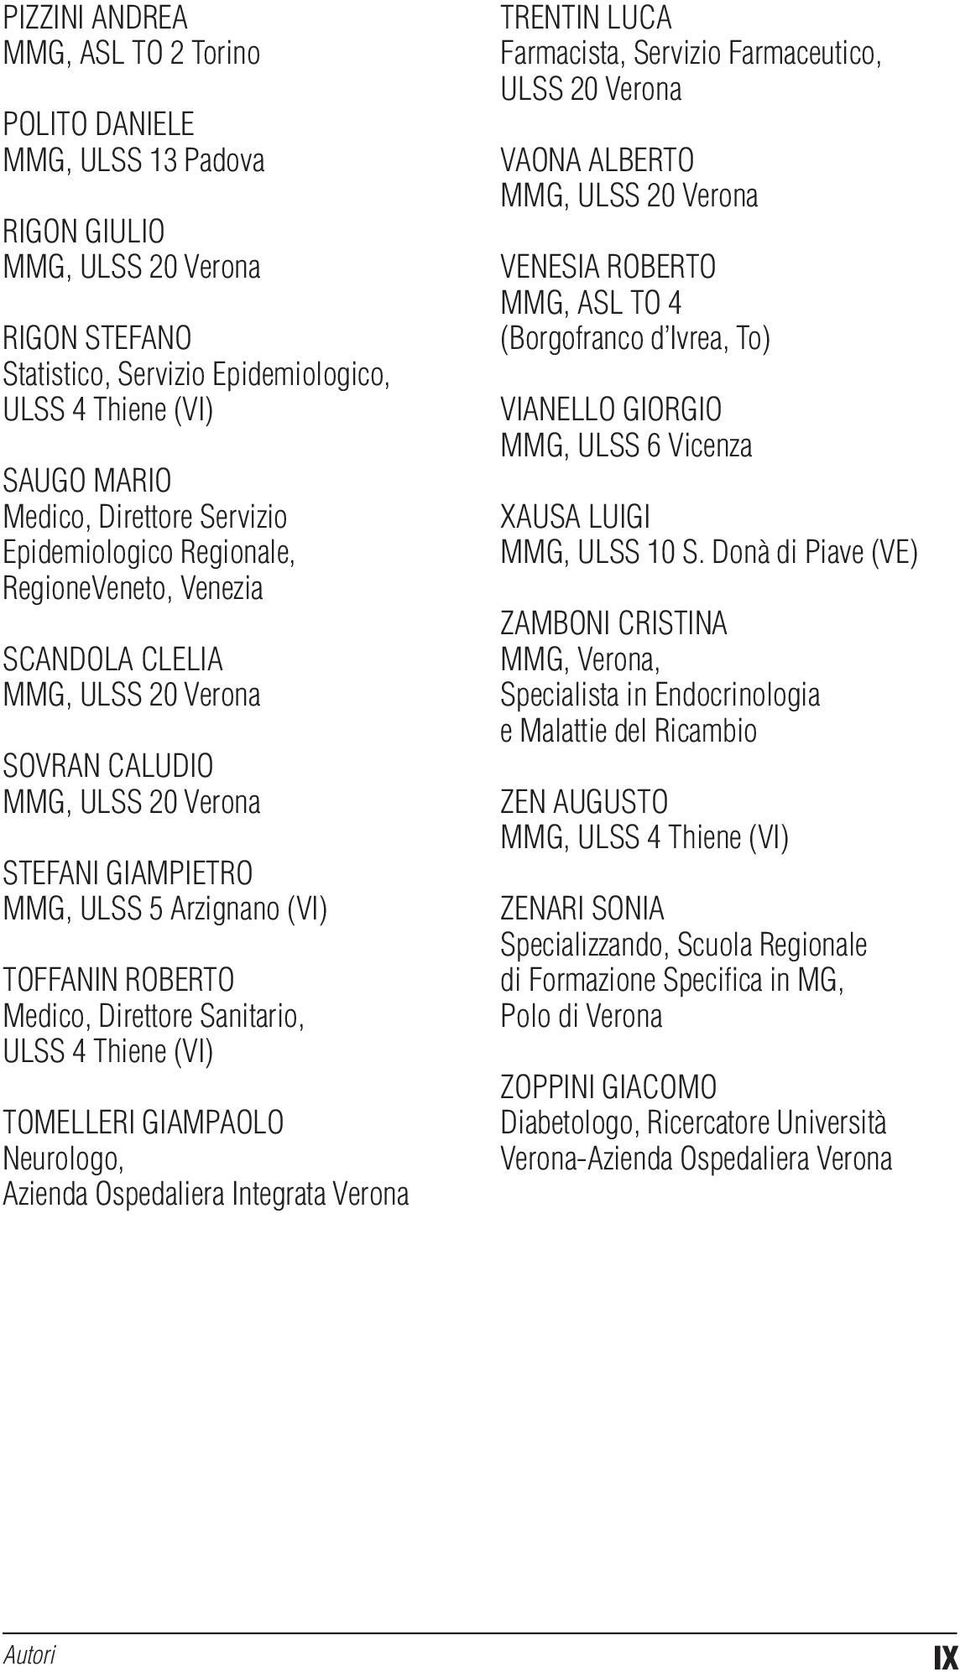 Azienda Ospedaliera Integrata Verona TRENTIN LUCA Farmacista, Servizio Farmaceutico, VAONA ALBERTO MMG, VENESIA ROBERTO MMG, ASL TO 4 (Borgofranco d Ivrea, To) VIANELLO GIORGIO MMG, ULSS 6 Vicenza